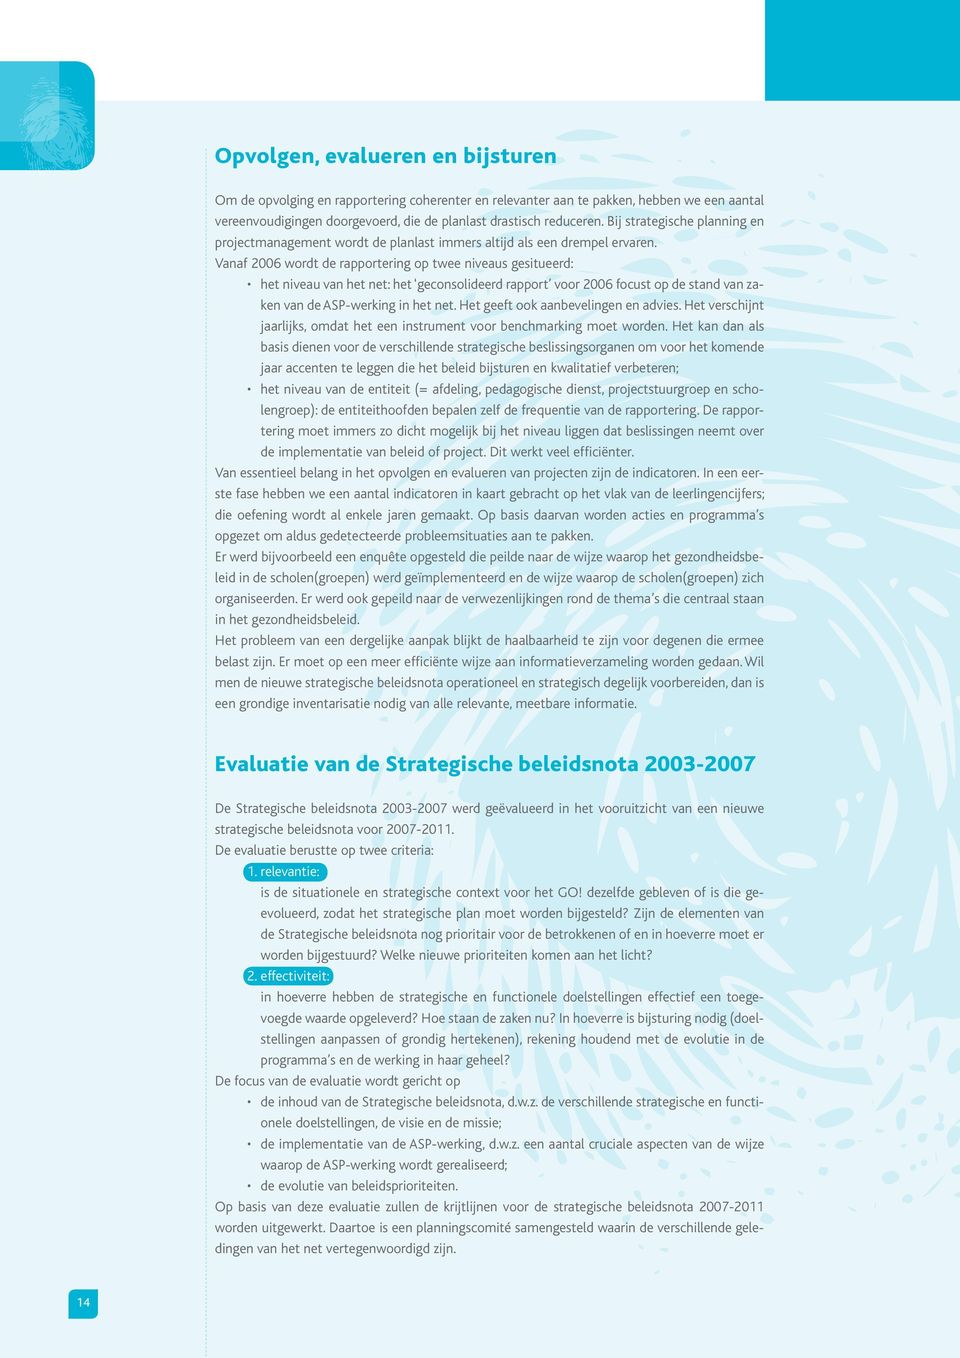 Vanaf 2006 wordt de rapportering op twee niveaus gesitueerd: het niveau van het net: het geconsolideerd rapport voor 2006 focust op de stand van zaken van de ASP-werking in het net.